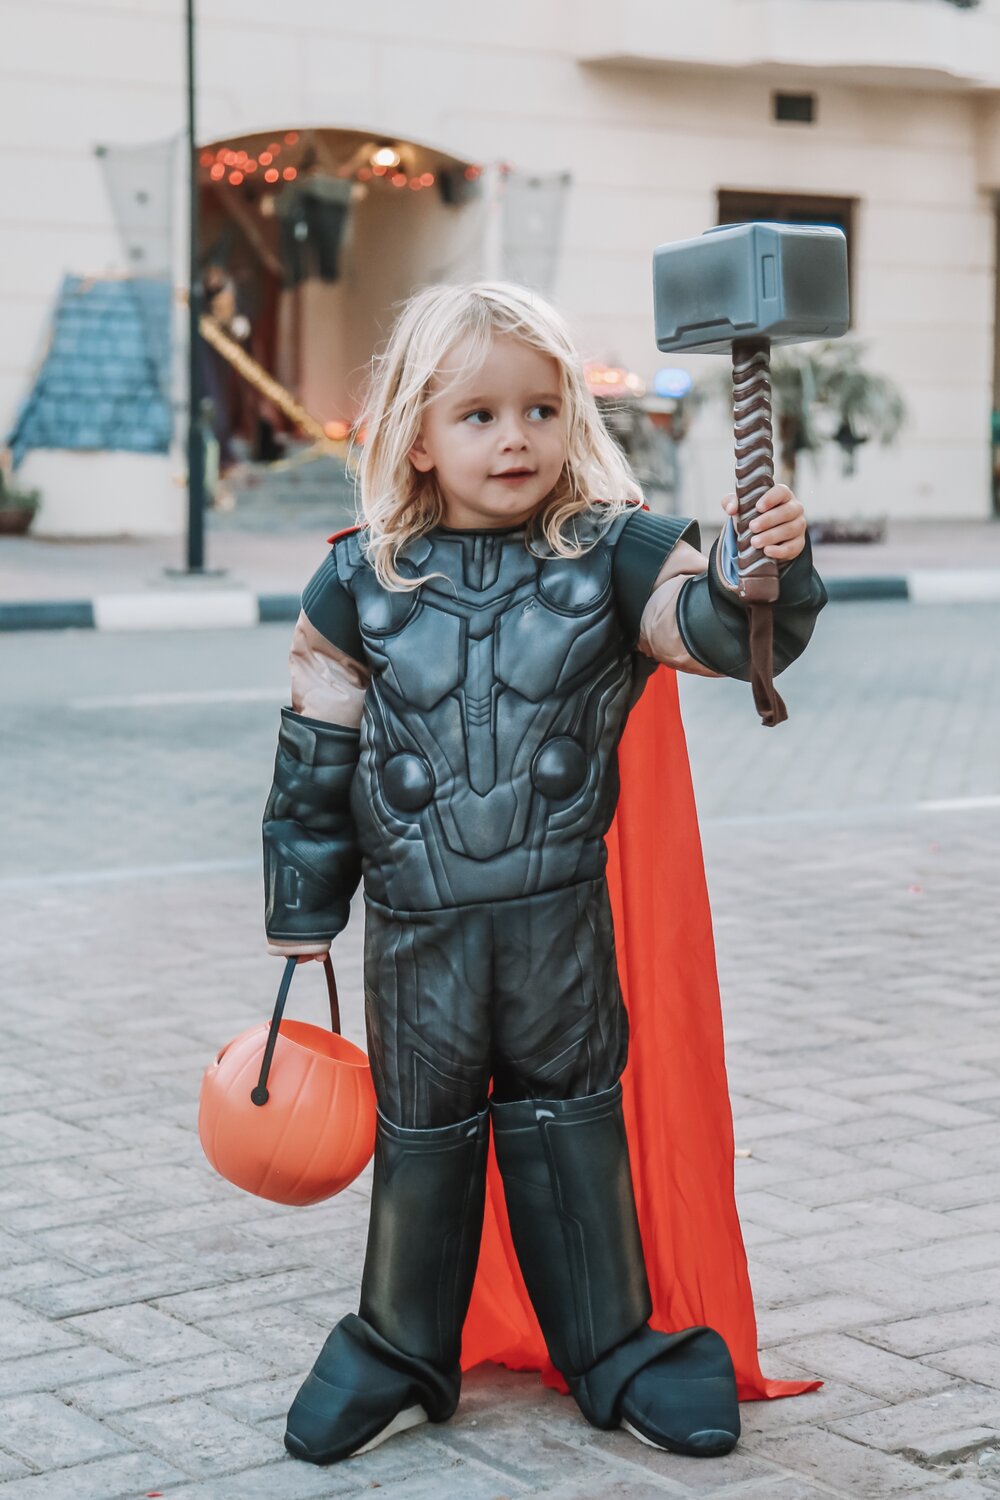 Kit as Thor